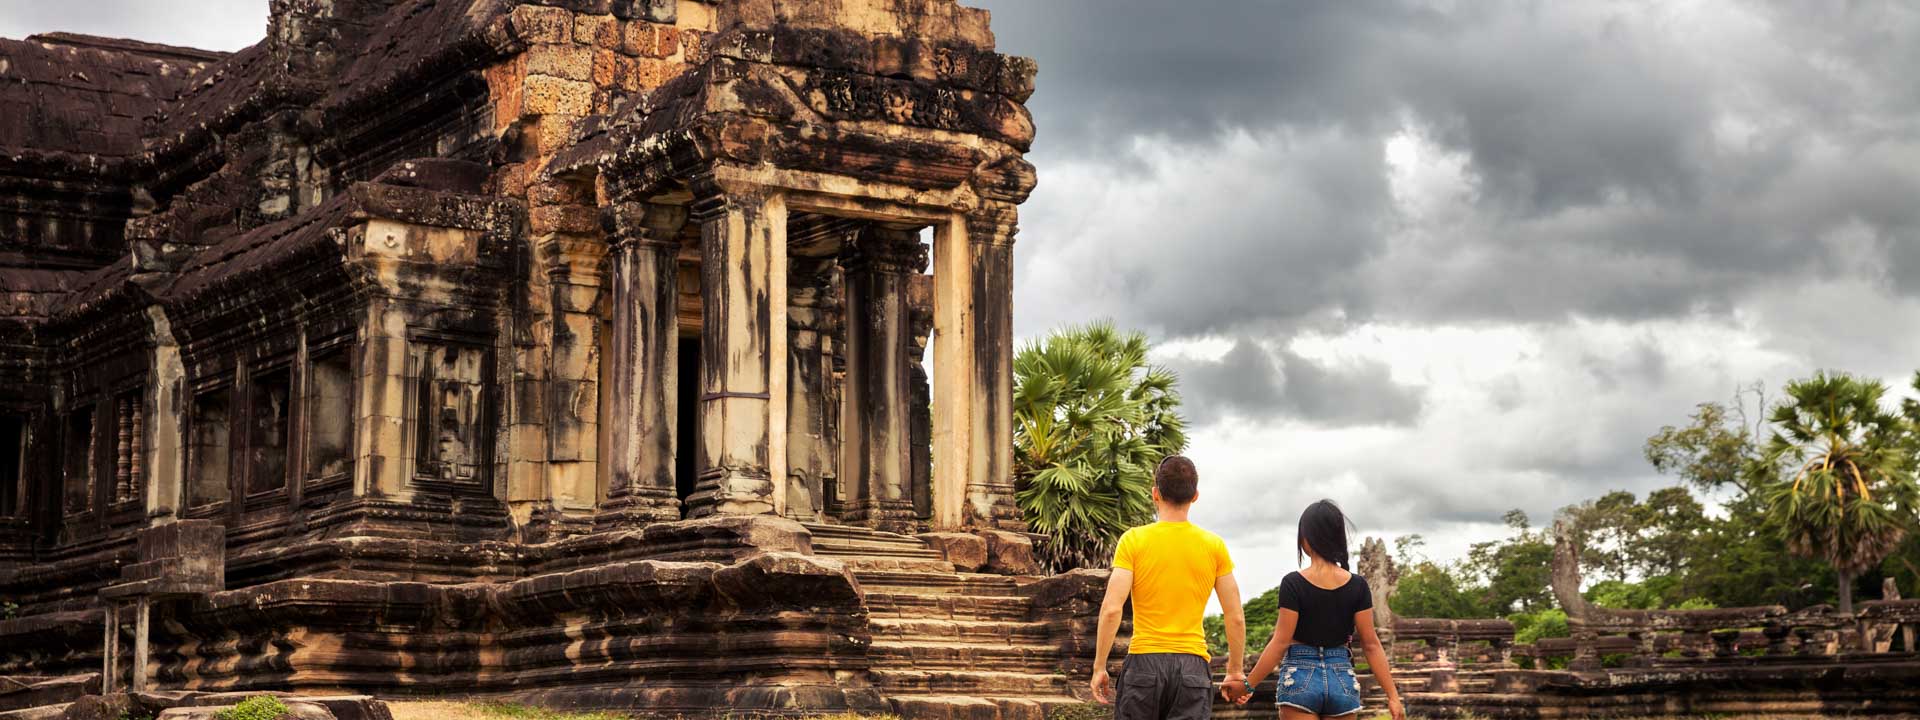 Exotic Vietnam Laos Cambodia Tour Package 7 days